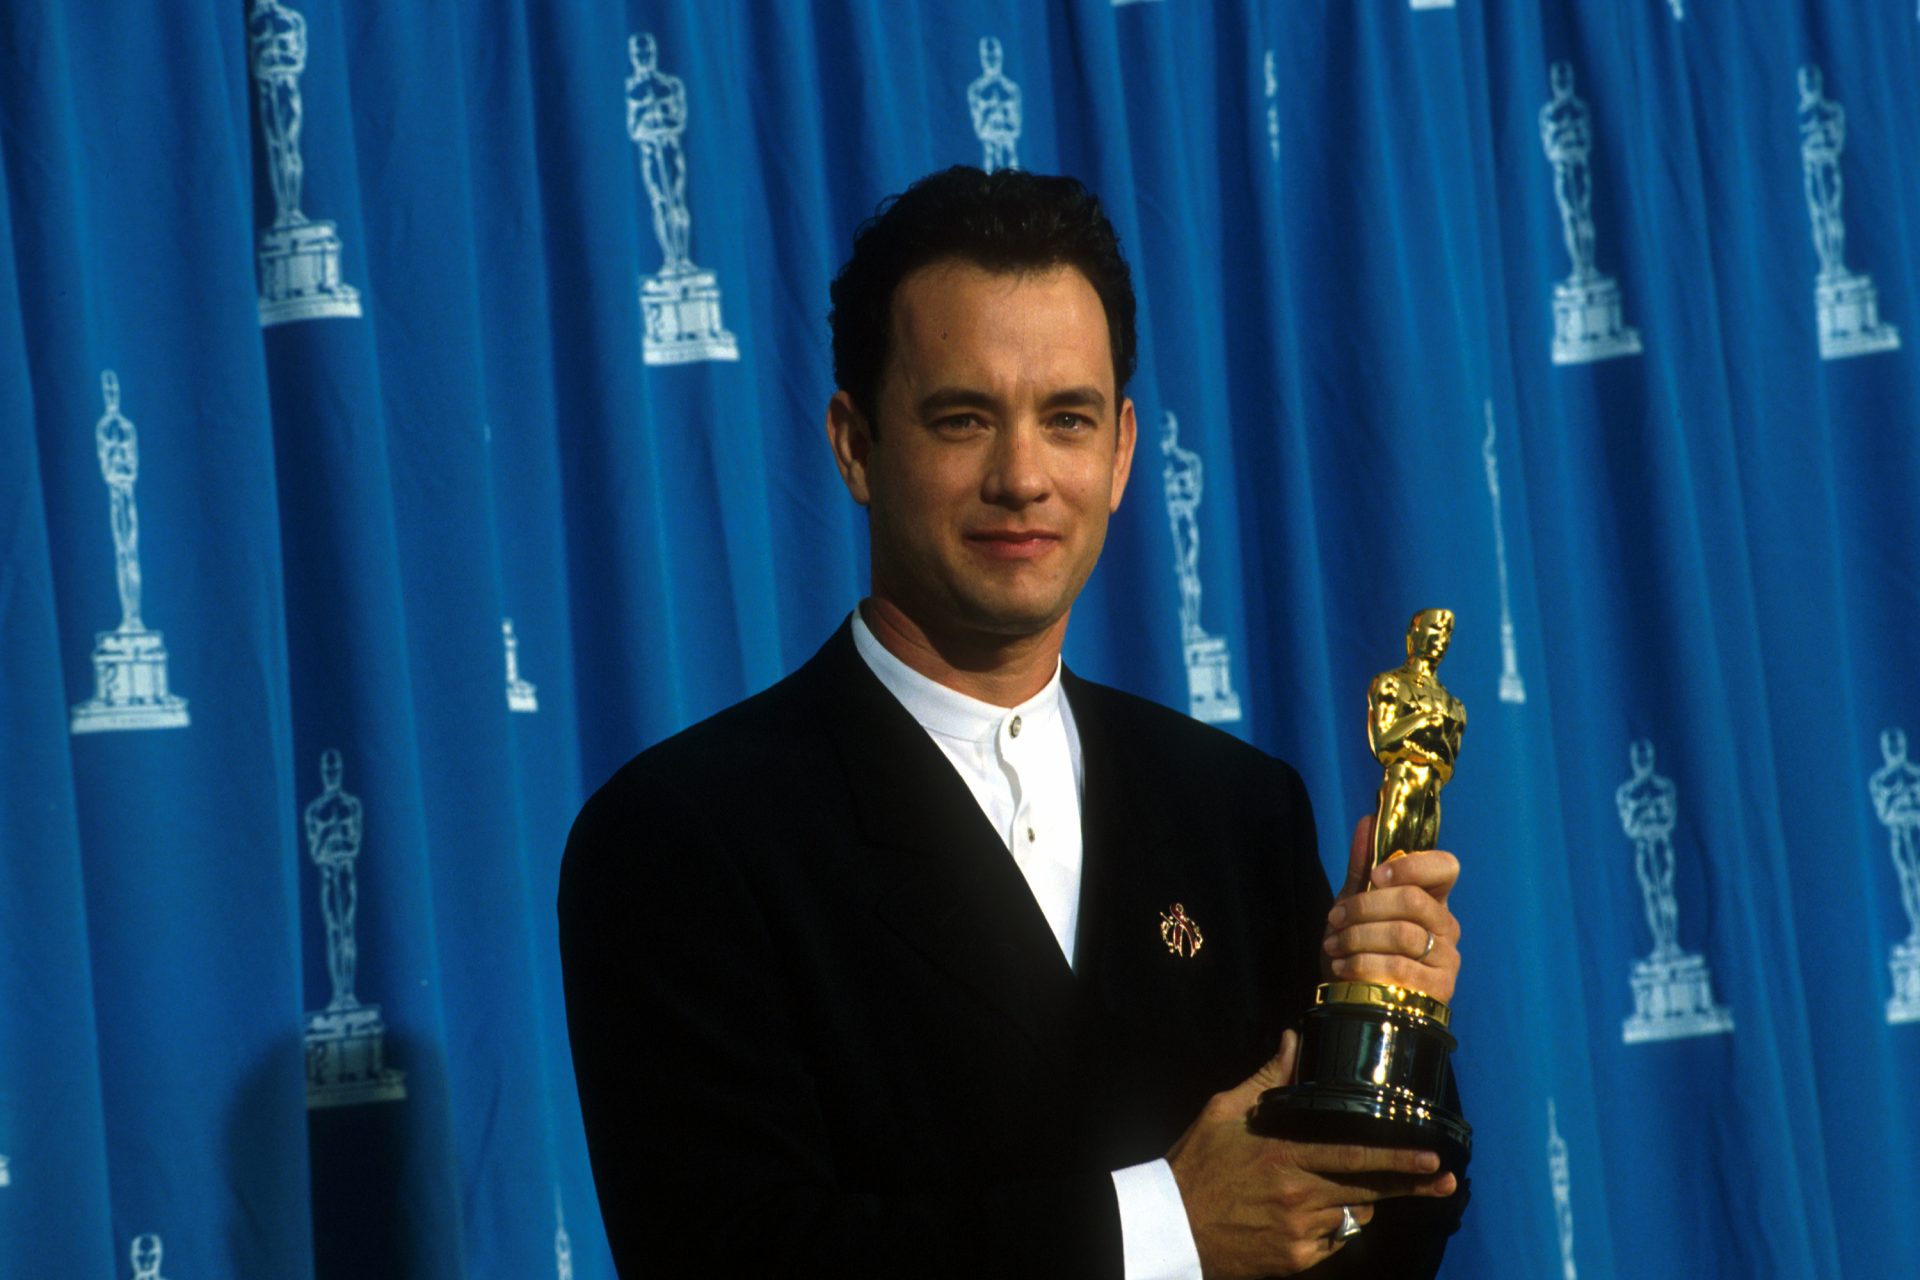 1993 - Tom Hanks